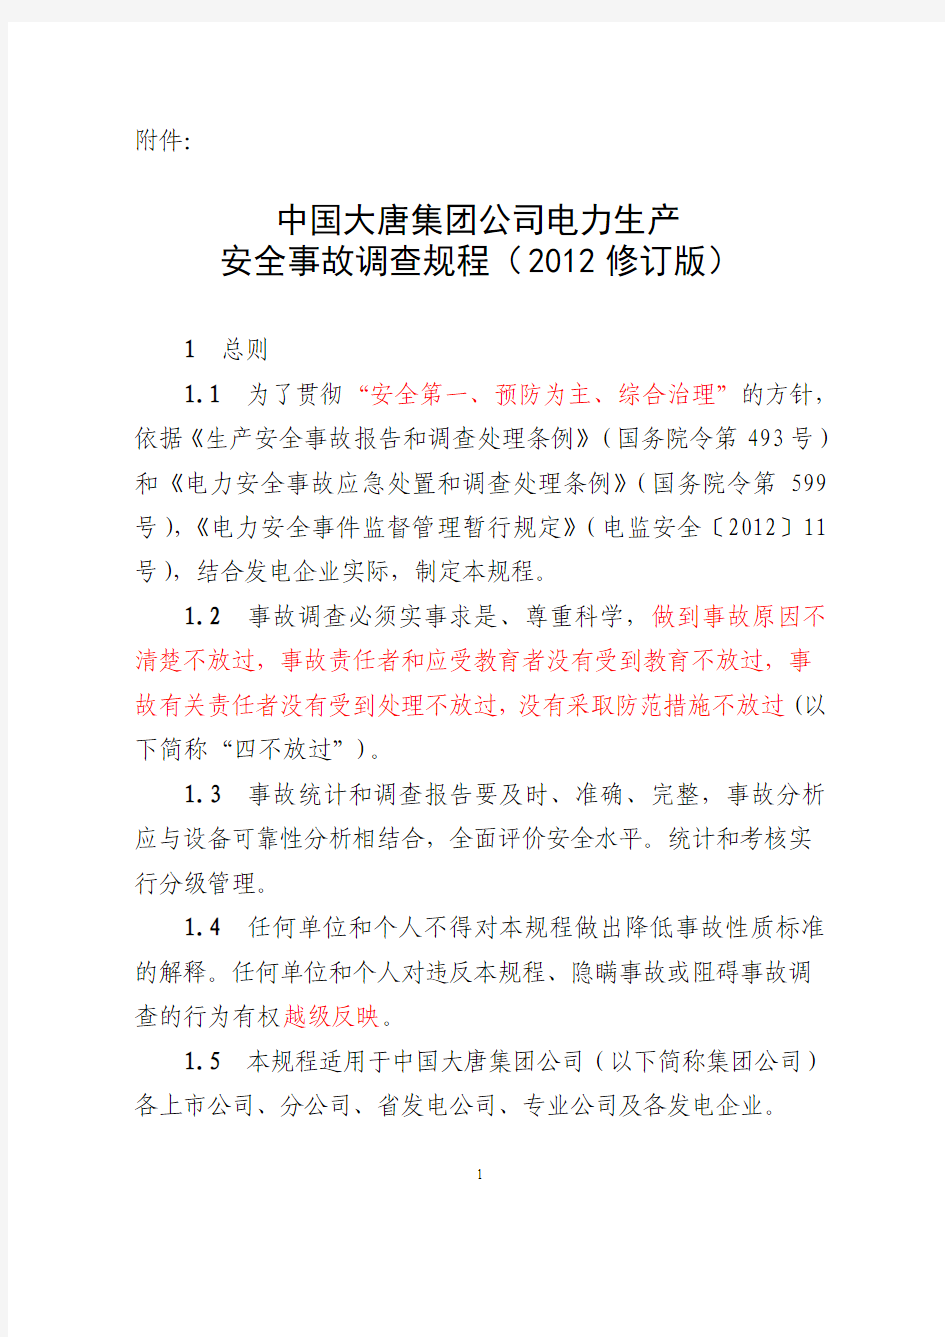 中国大唐集团公司电力生产安全事故调查规程(2012版).doc